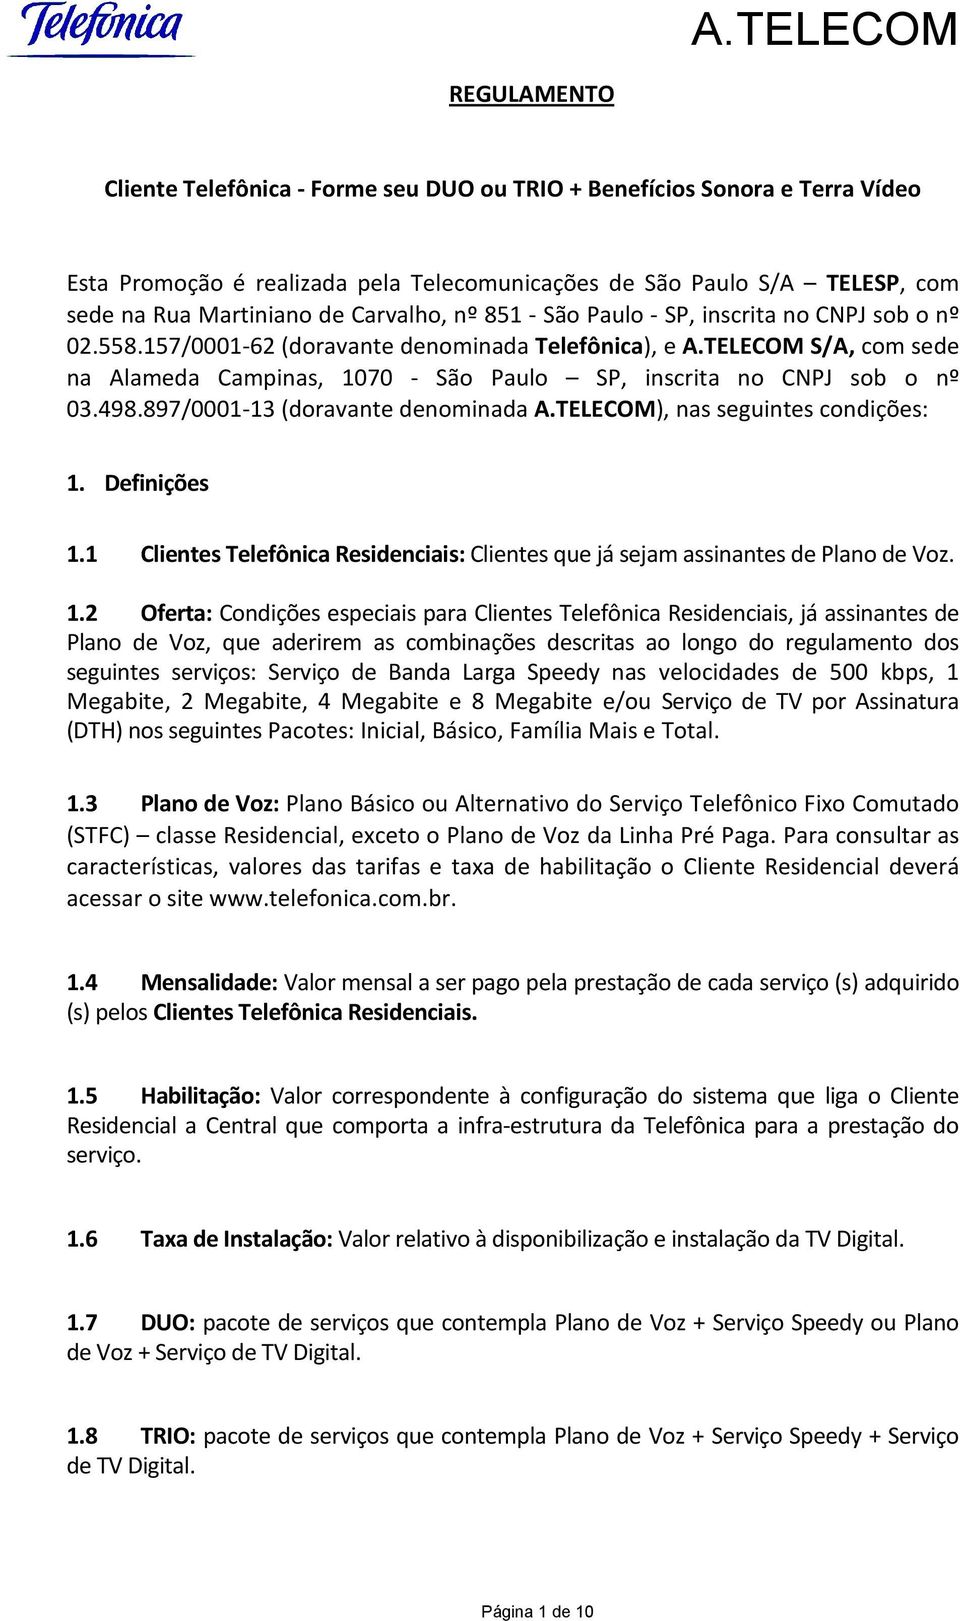 TELECOM S/A, com sede na Alameda Campinas, 1070 - São Paulo SP, inscrita no CNPJ sob o nº 03.498.897/0001-13 (doravante denominada A.TELECOM), nas seguintes condições: 1. Definições 1.